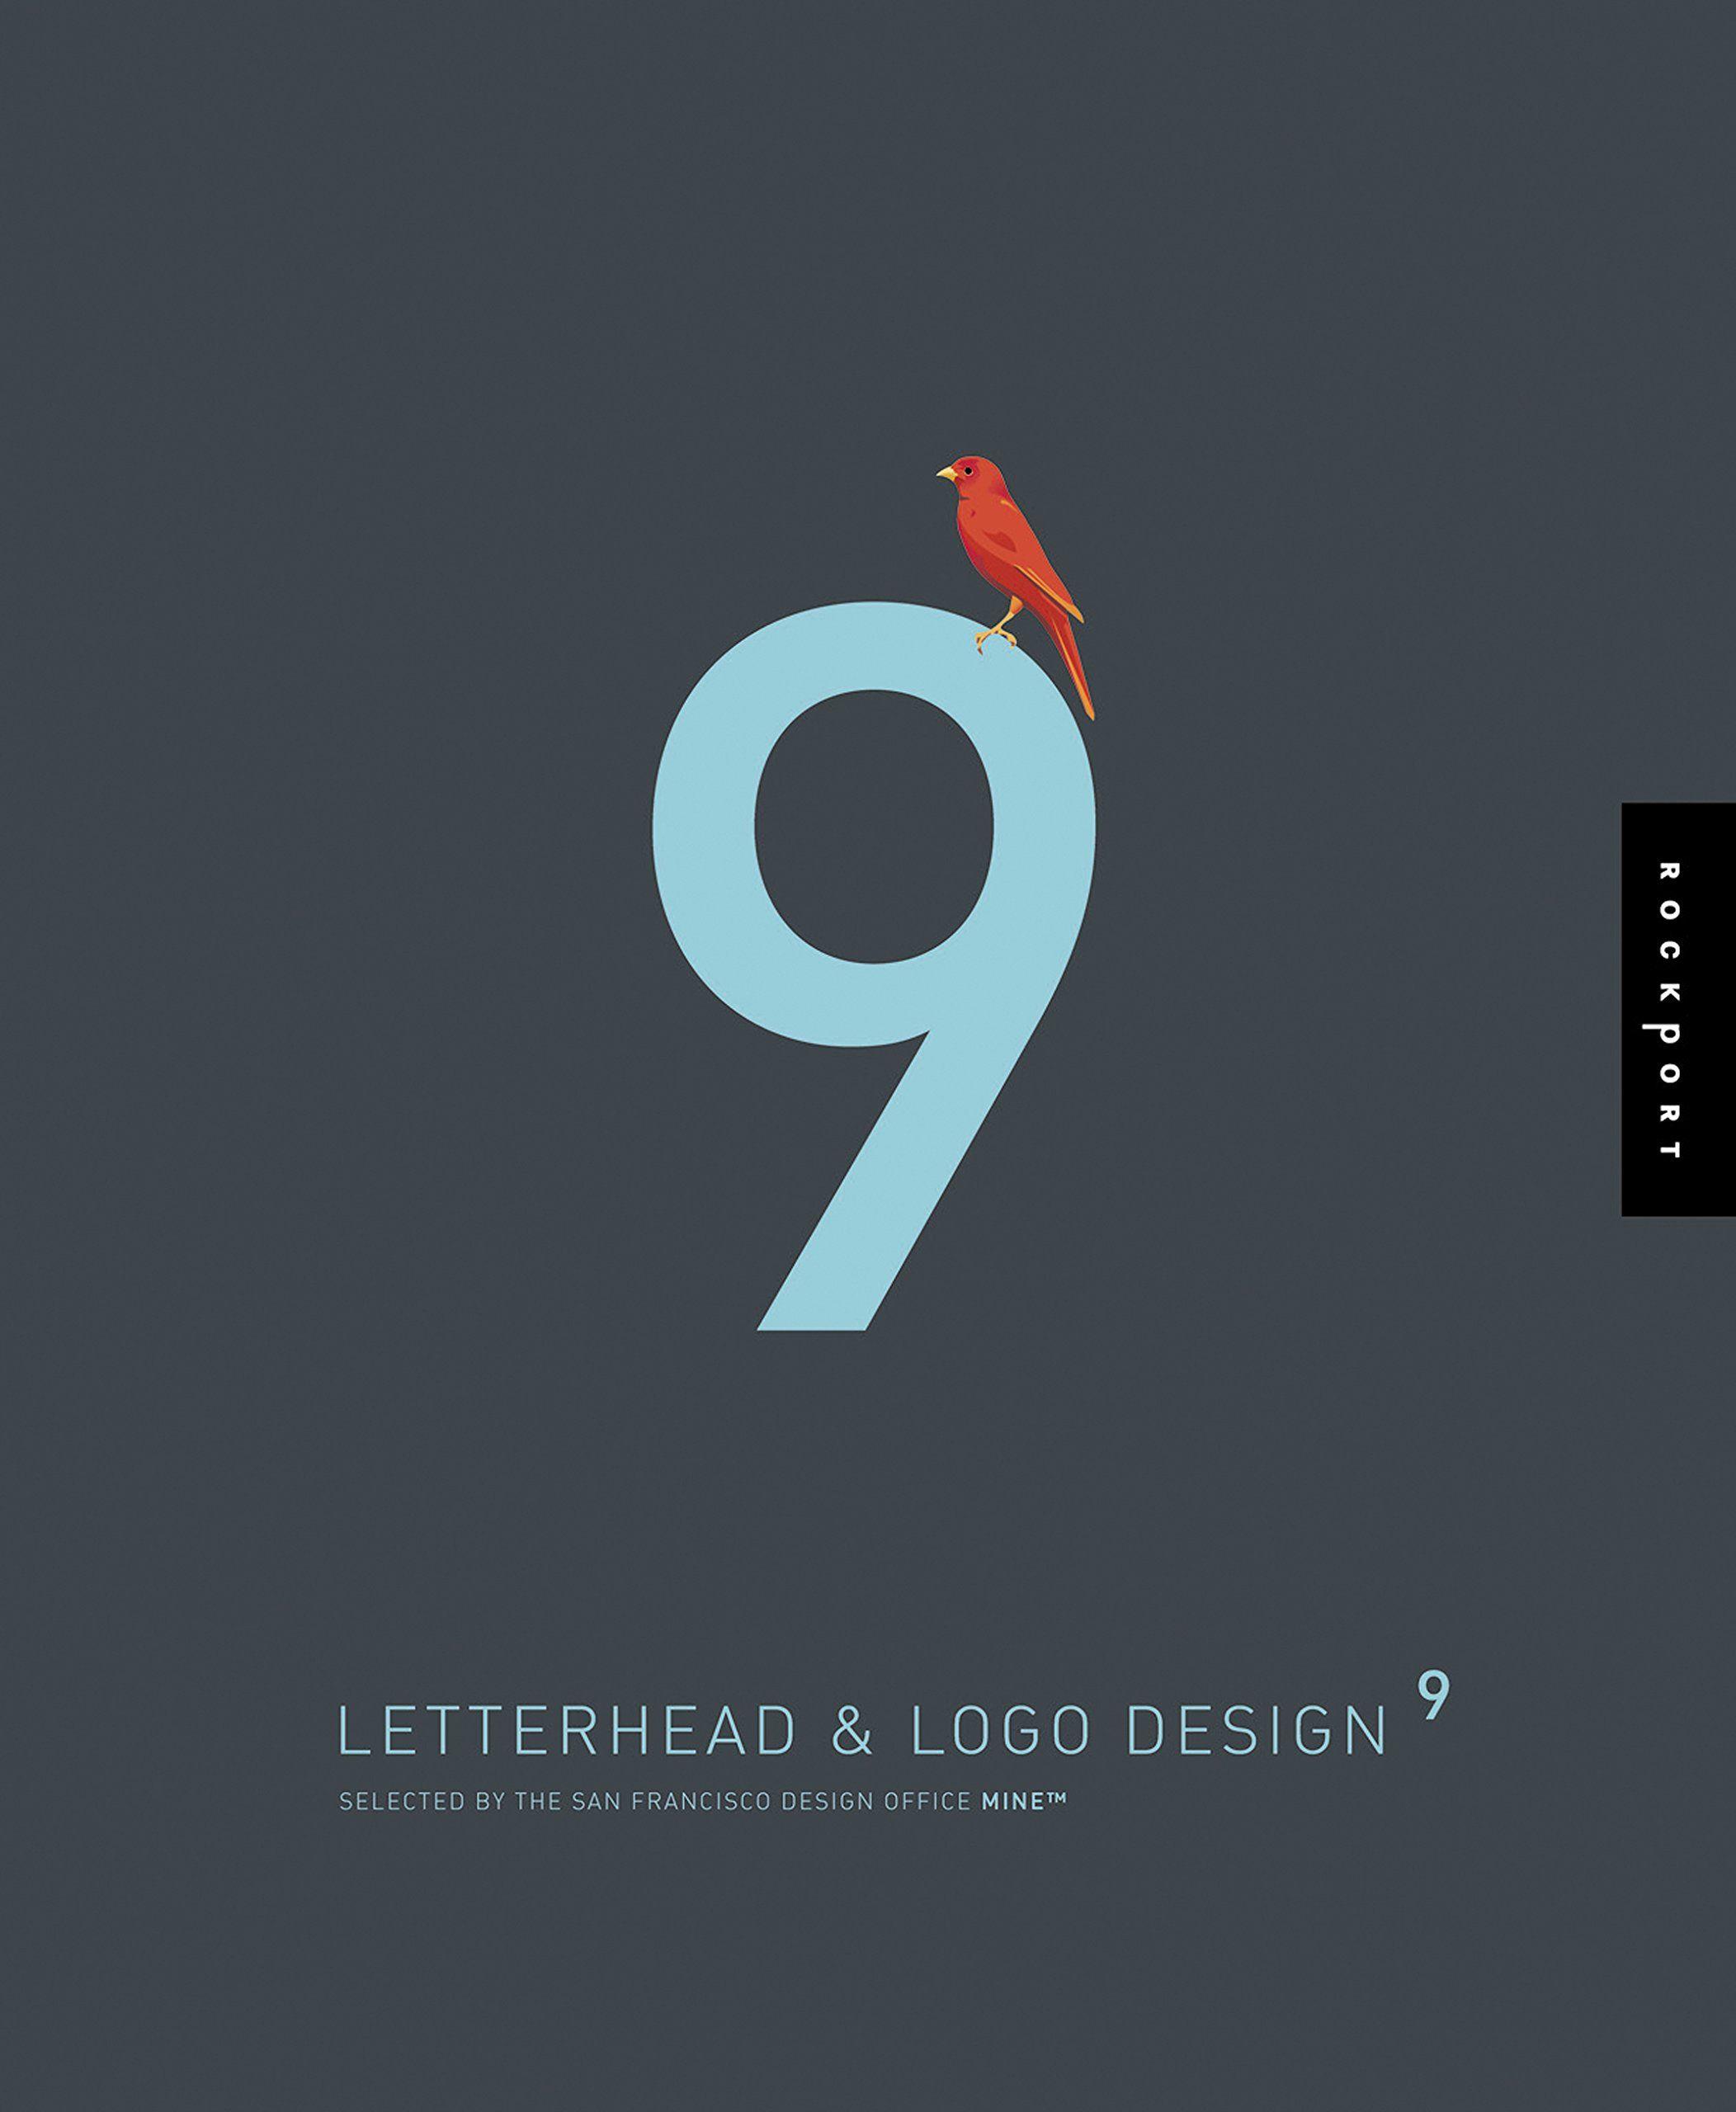 9 Logo - Letterhead and Logo Design 9 (Letterhead & LOGO Design (Quality)) (v